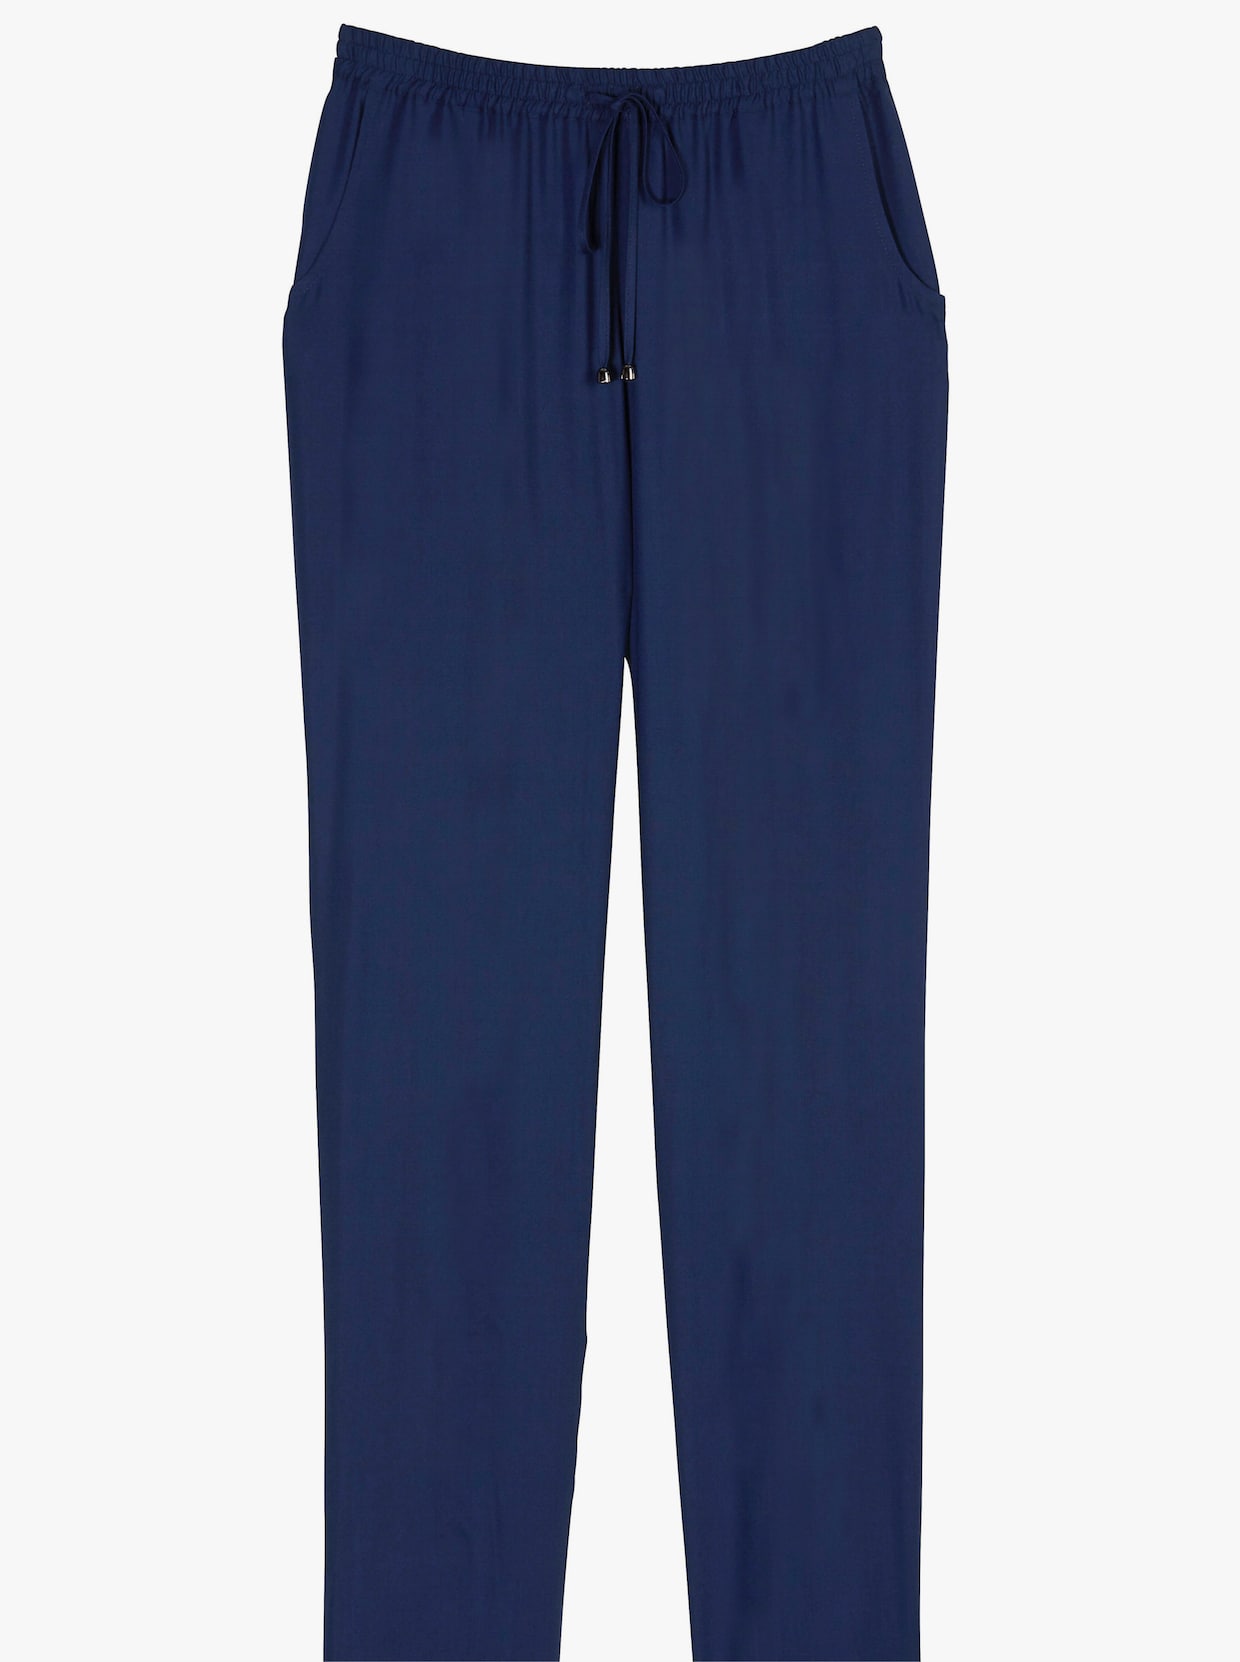 Nohavice na gumu - námornícka modrá